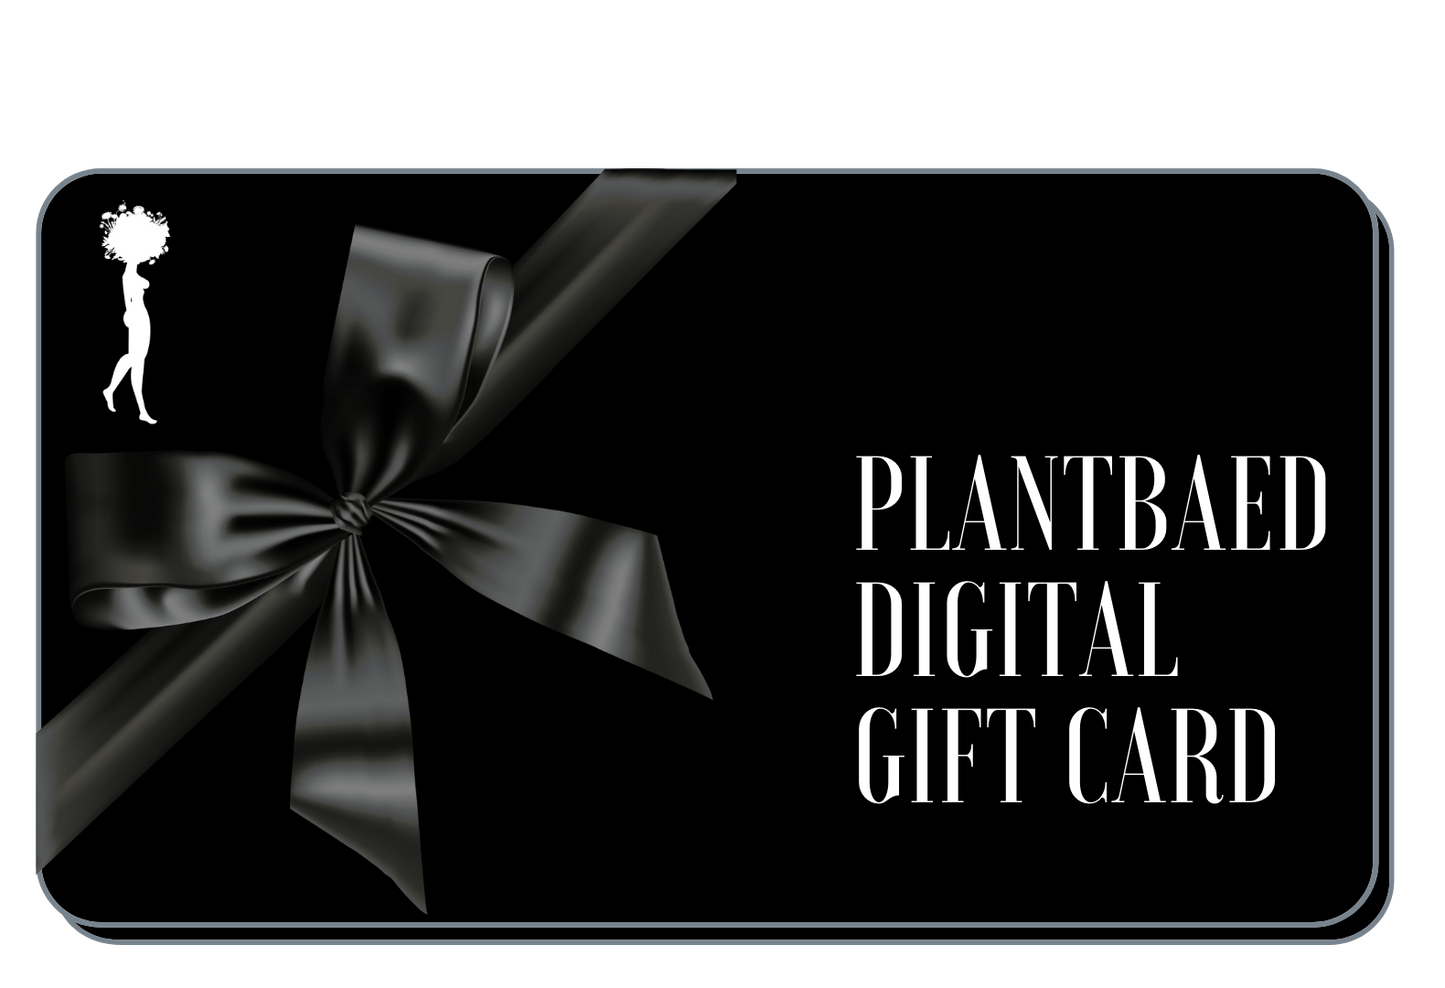 Plantbaed Digital Gift Card